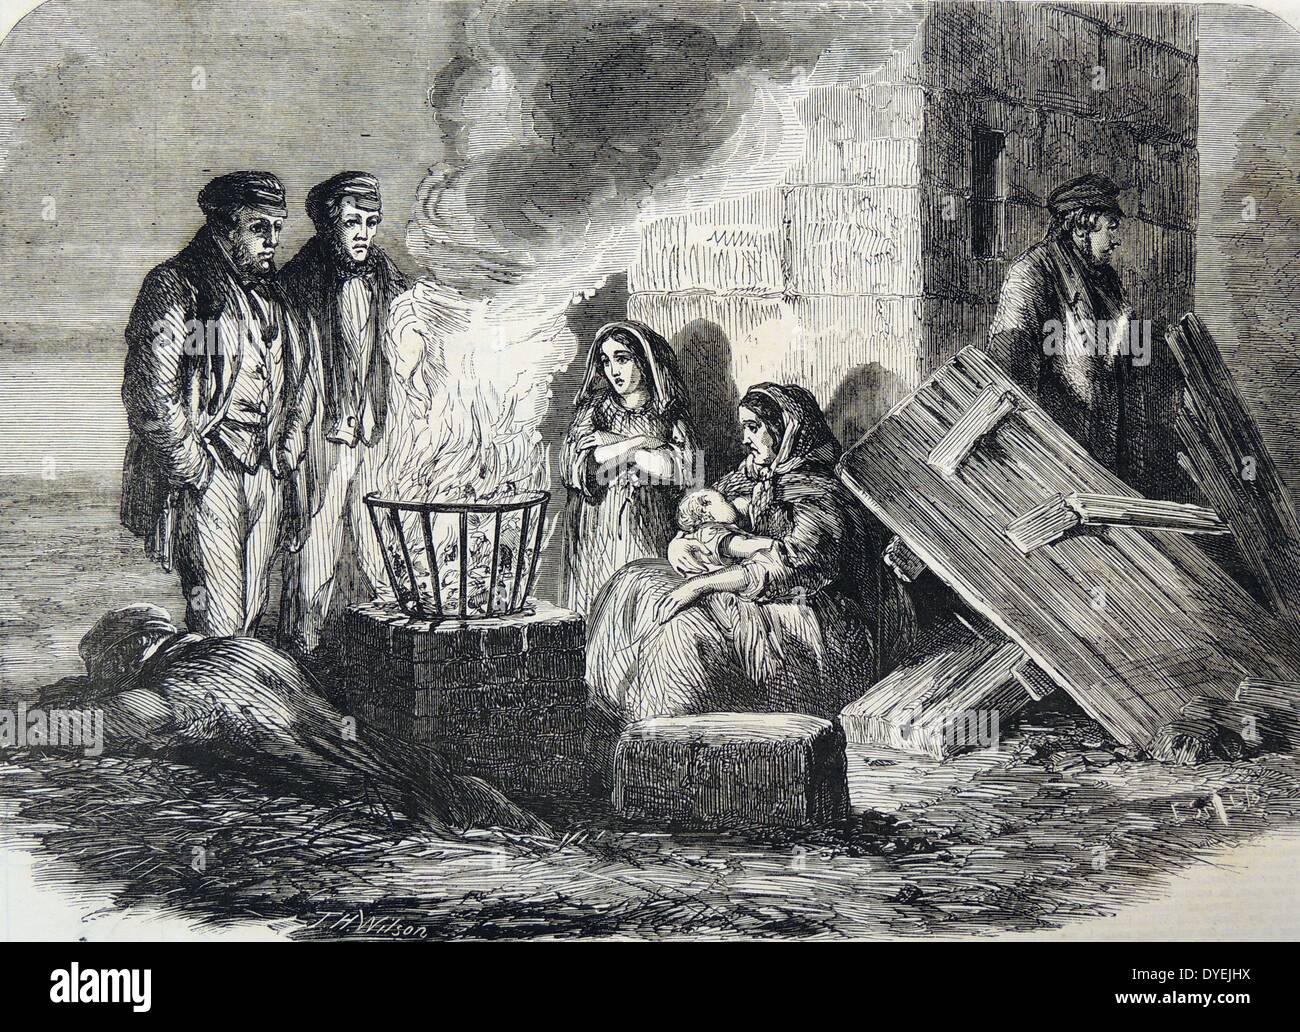 Hartley Colliery Pit Disaster, Northumberland, 16. Januar 1862. Freunde und Familien an der Grube Kopf warten auf Nachrichten. Kupferstich, London, 1862. Stockfoto